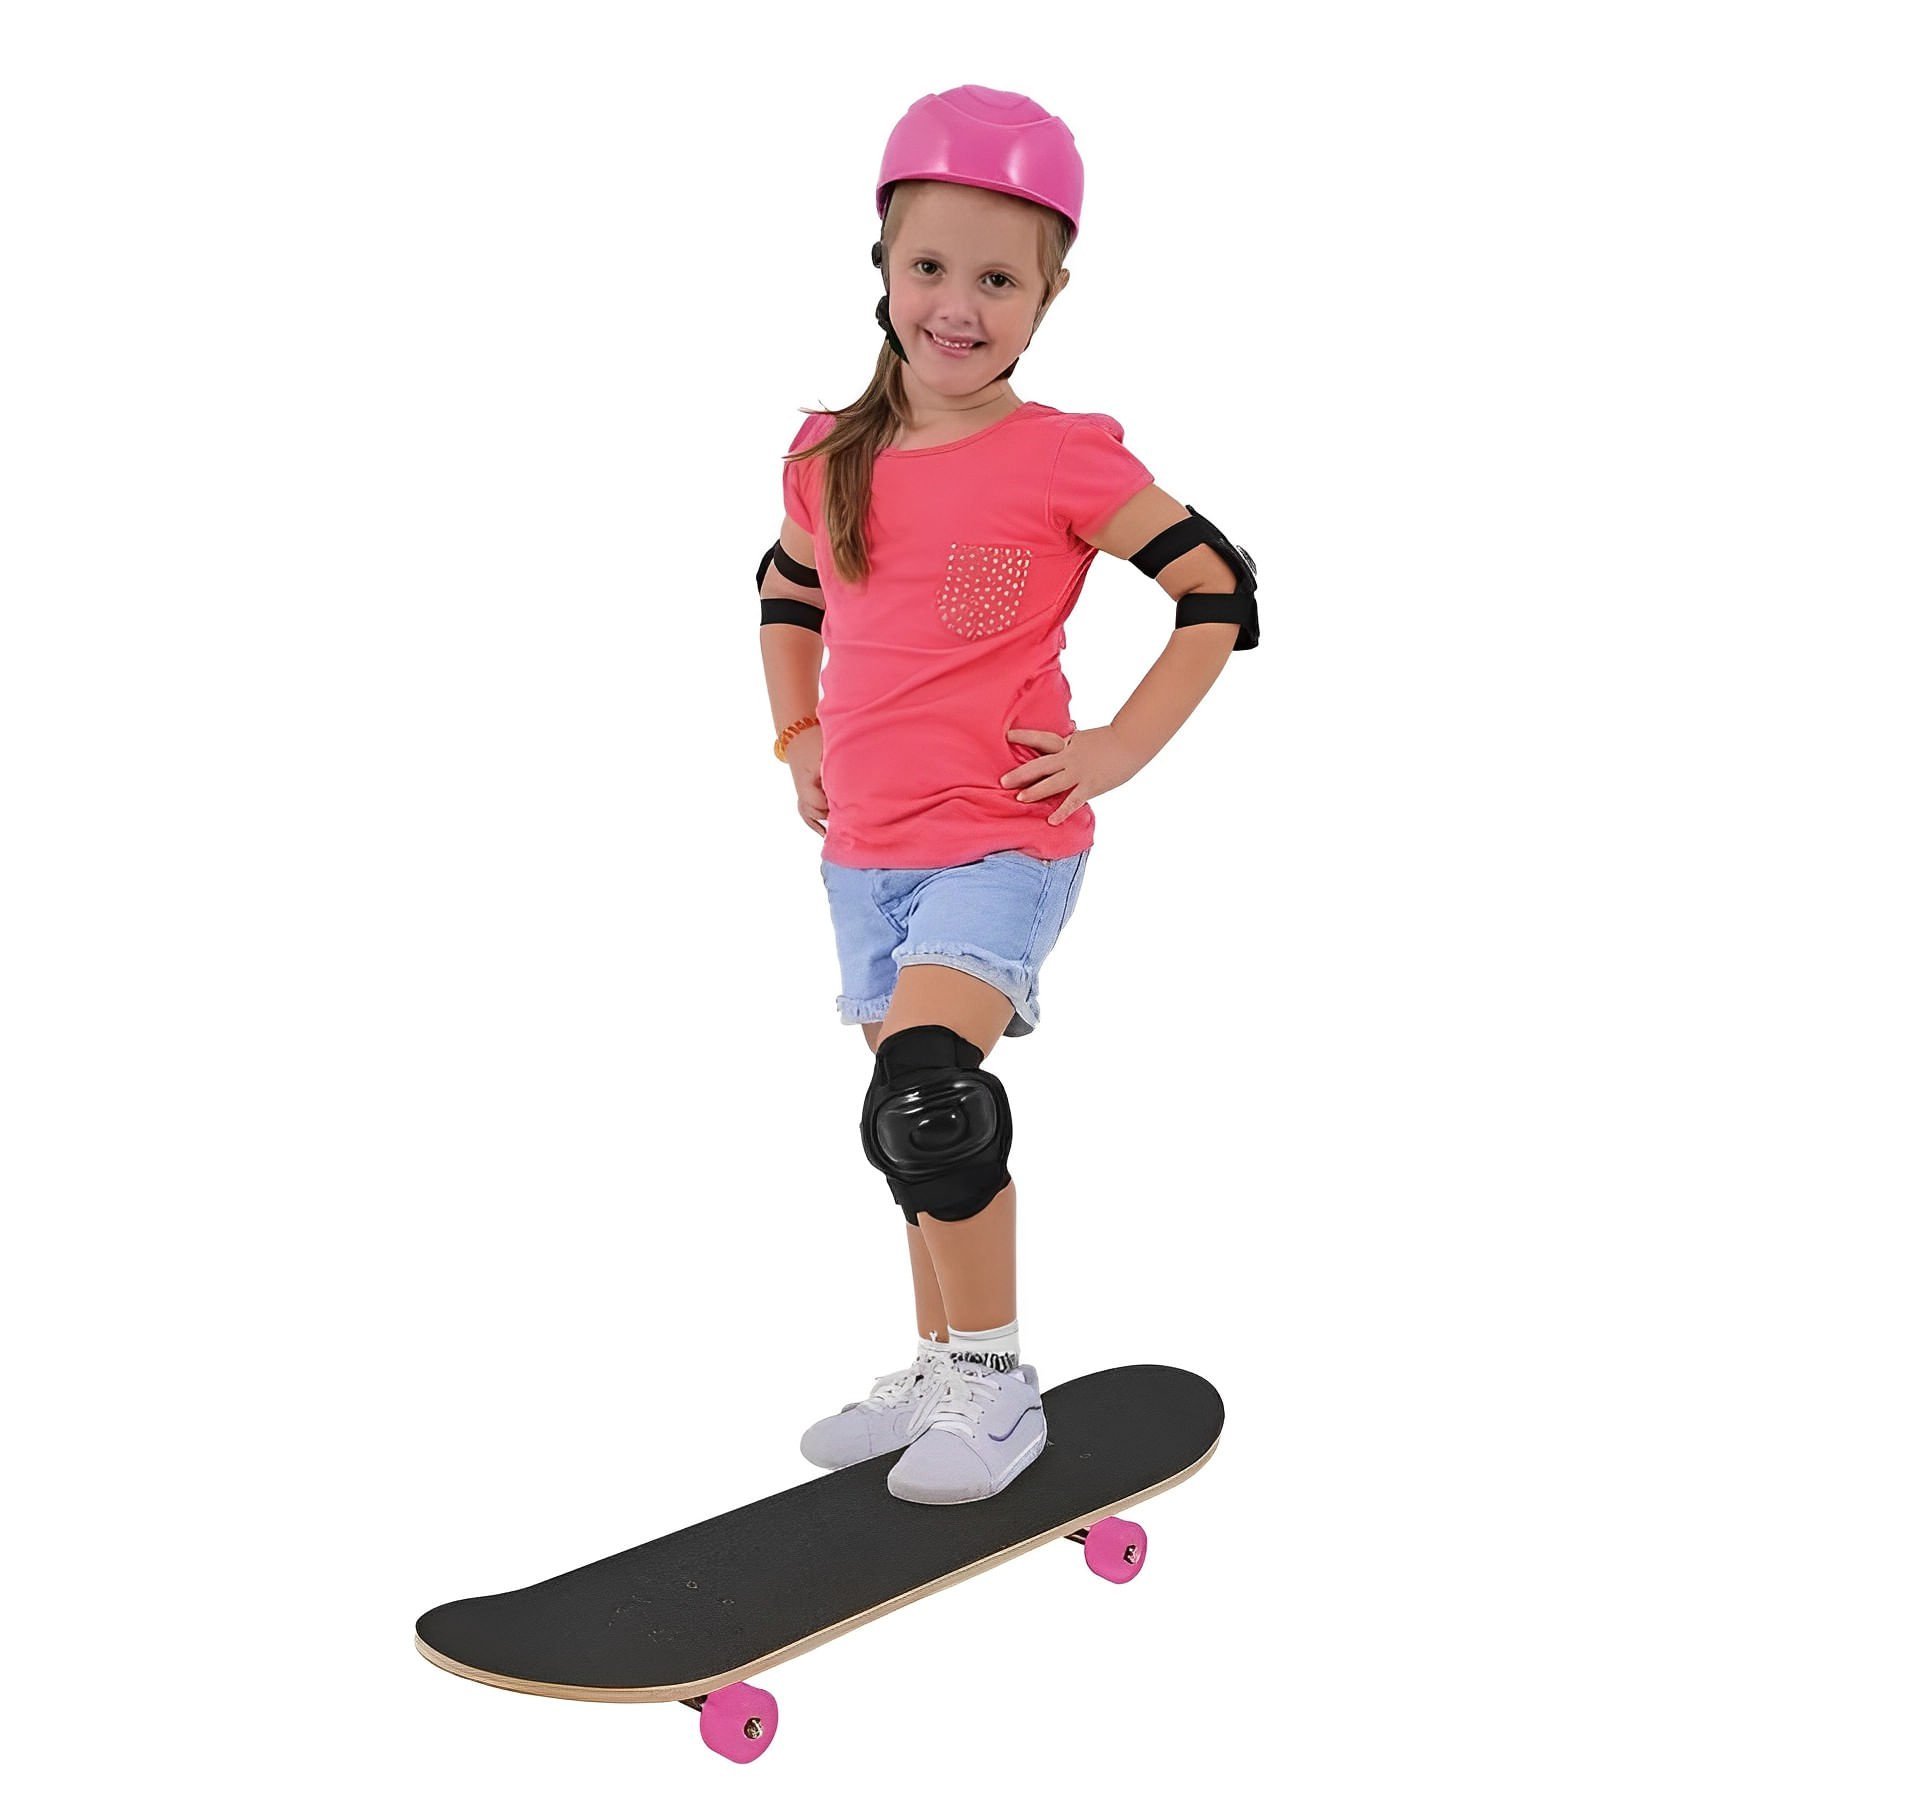 Skate Infantil Radical Style com Kit de Proteção - Well Kids WELLMIX IMPORTADORA - 3